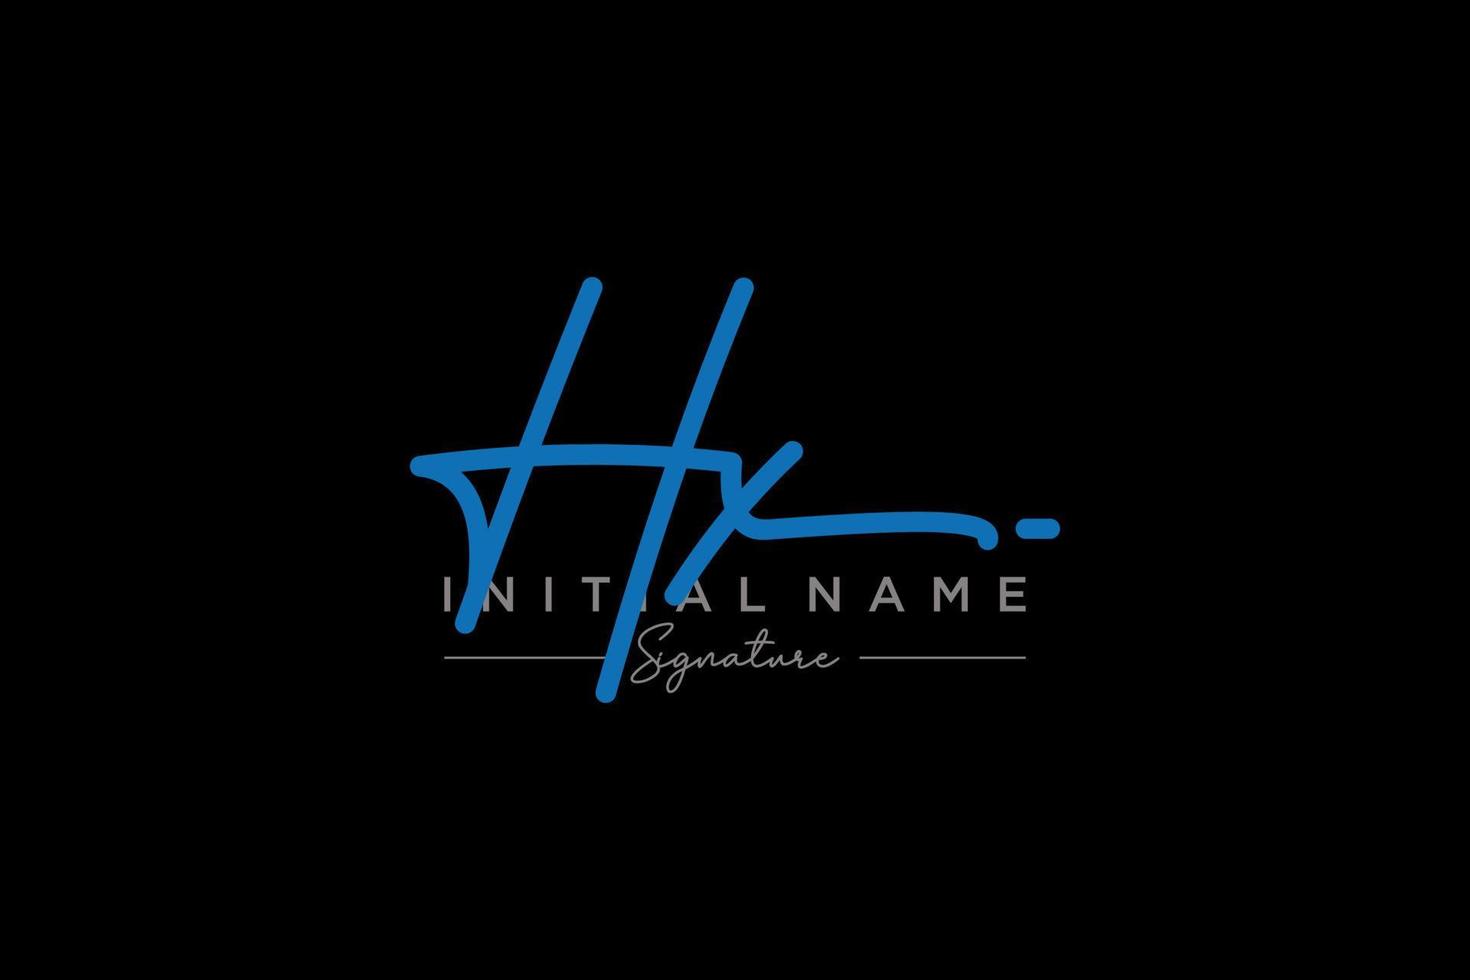 vetor inicial de modelo de logotipo de assinatura hx. ilustração vetorial de letras de caligrafia desenhada à mão.